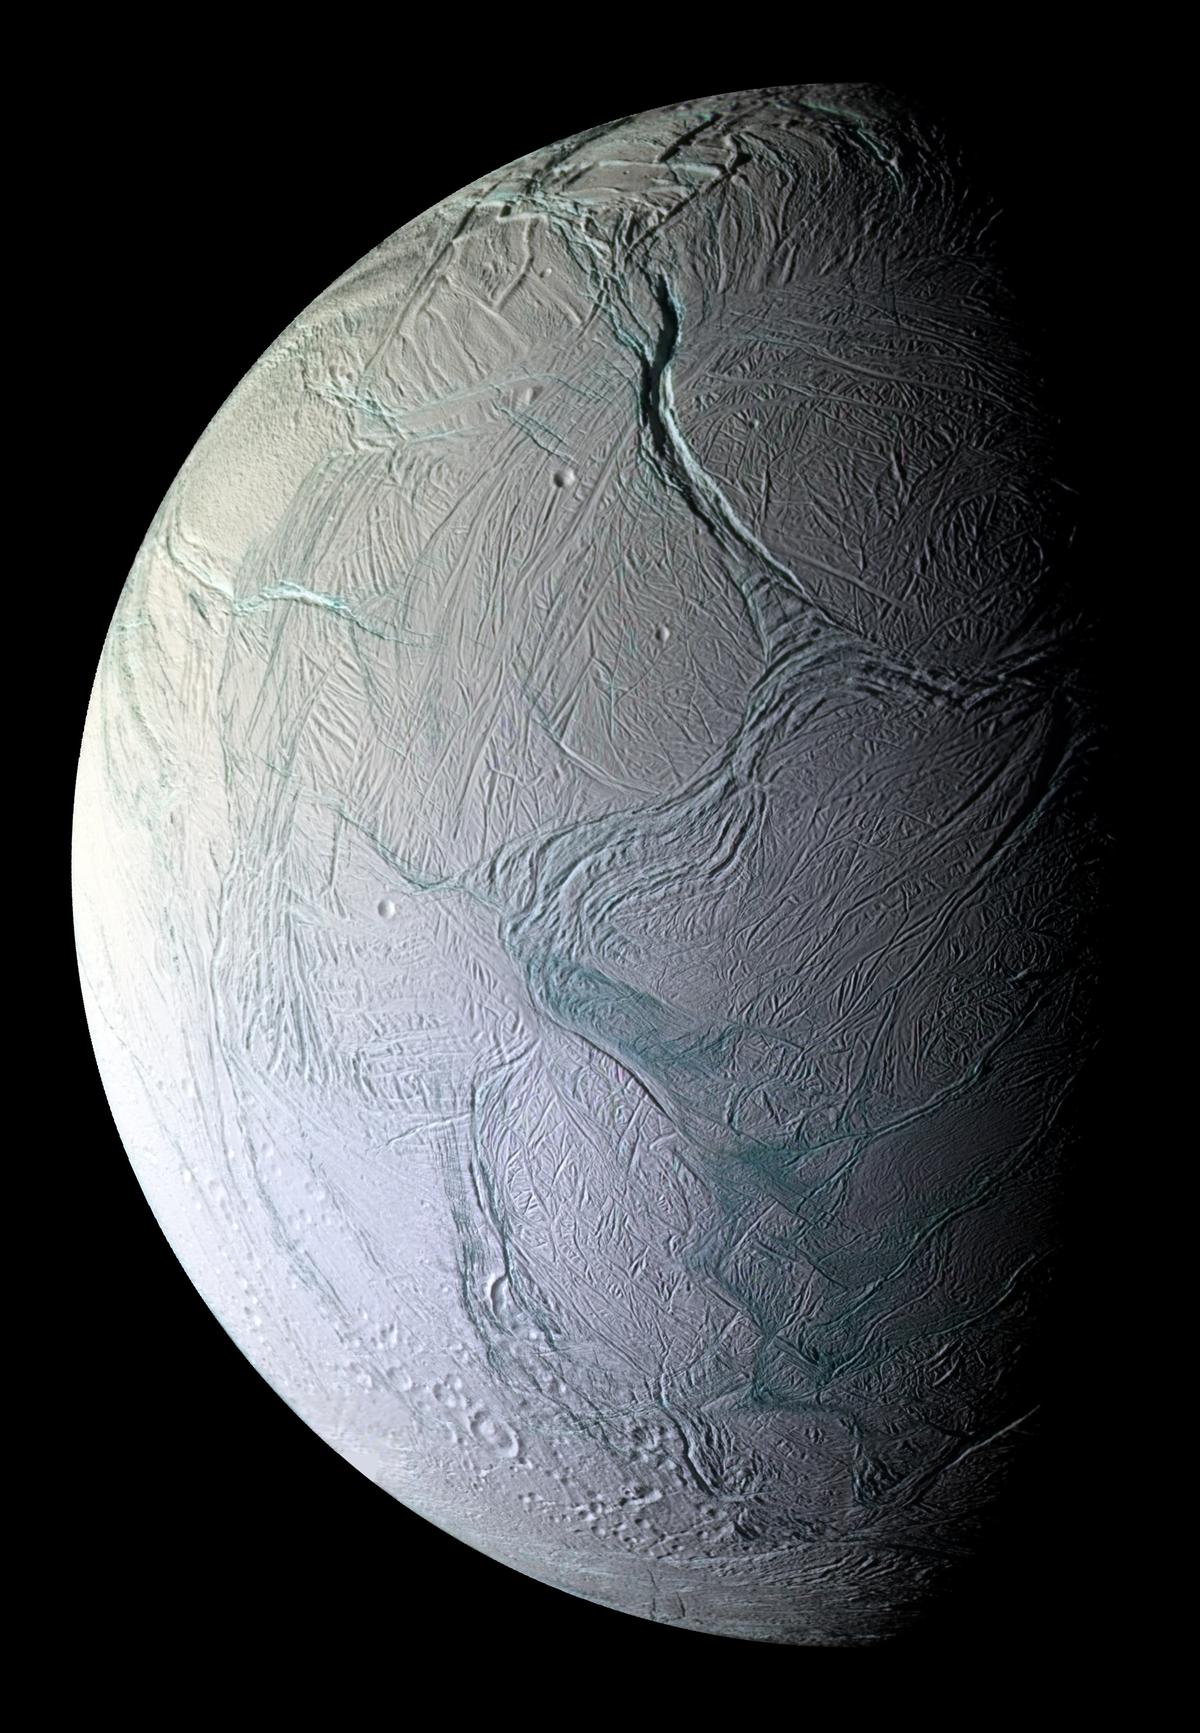 Global Ocean Makes Saturn's Moon Wobble